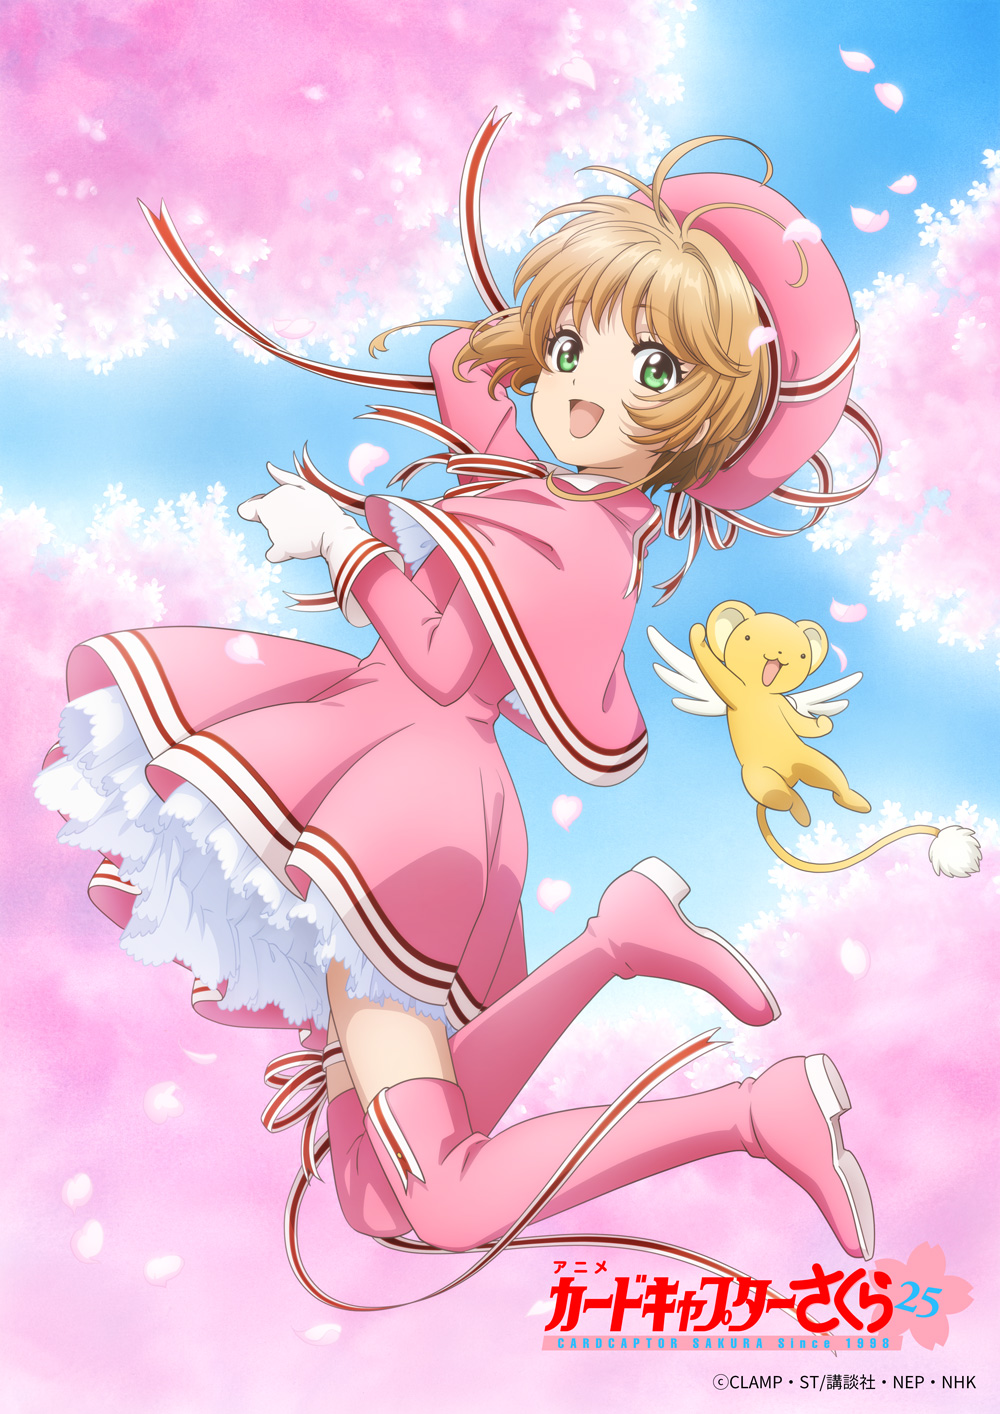 Recrutamento Sakura Animes 2.0 - Sakura Animes